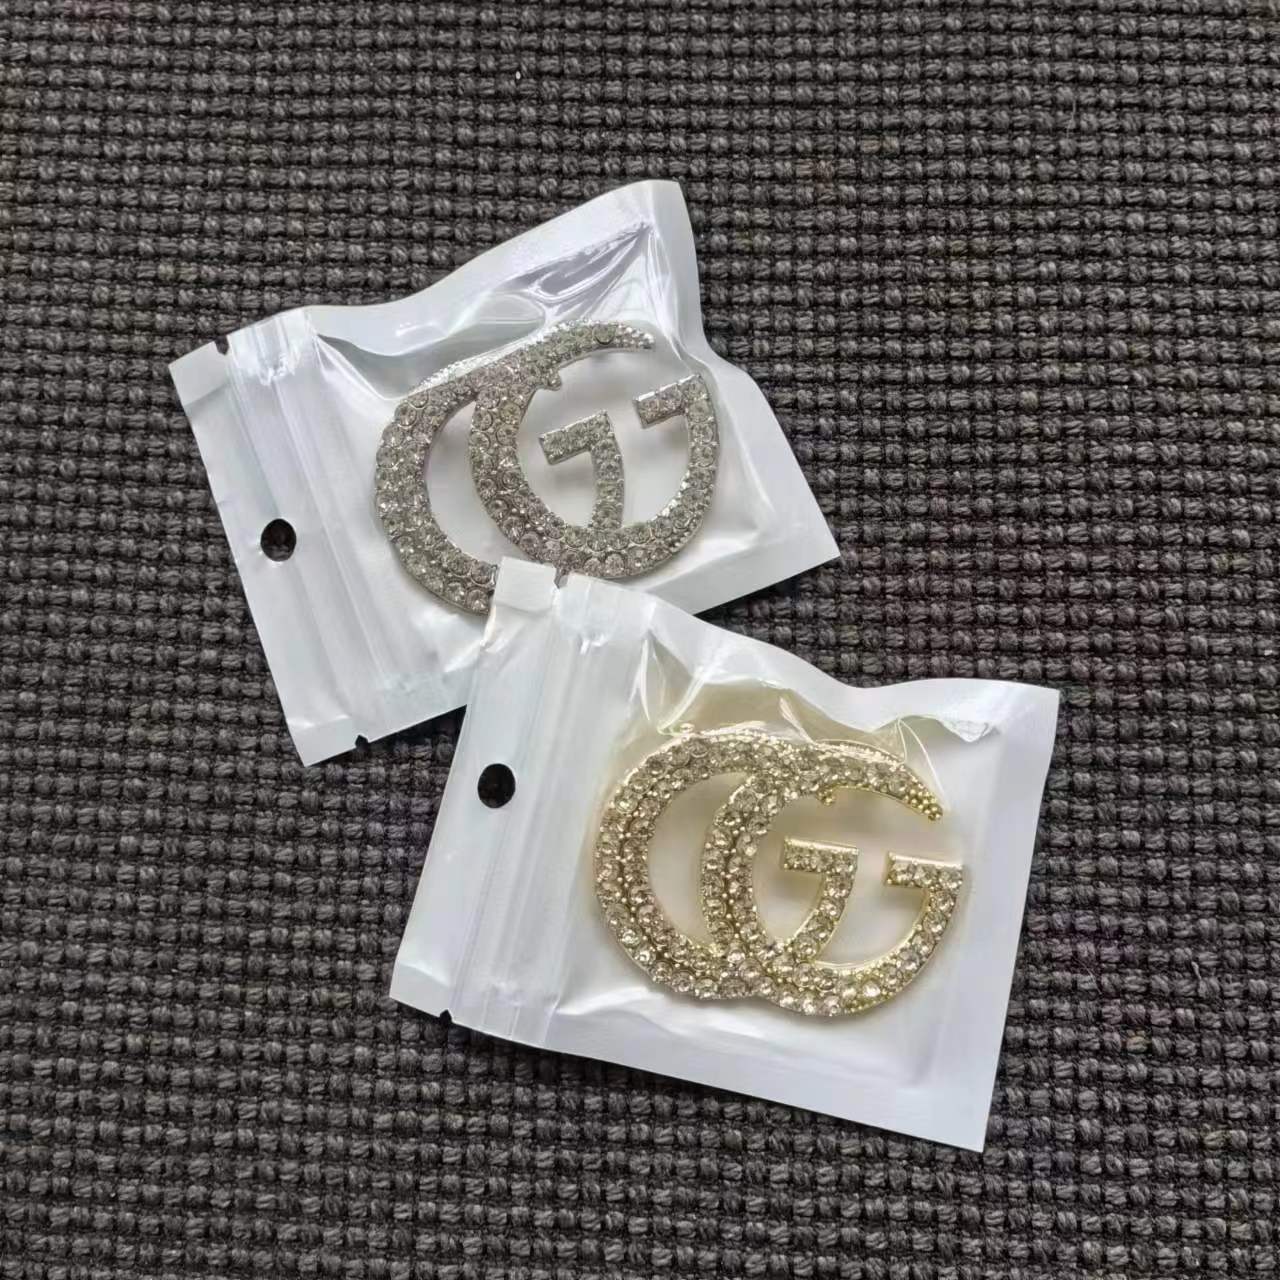 Big sale! Gucci GG crystal brooch